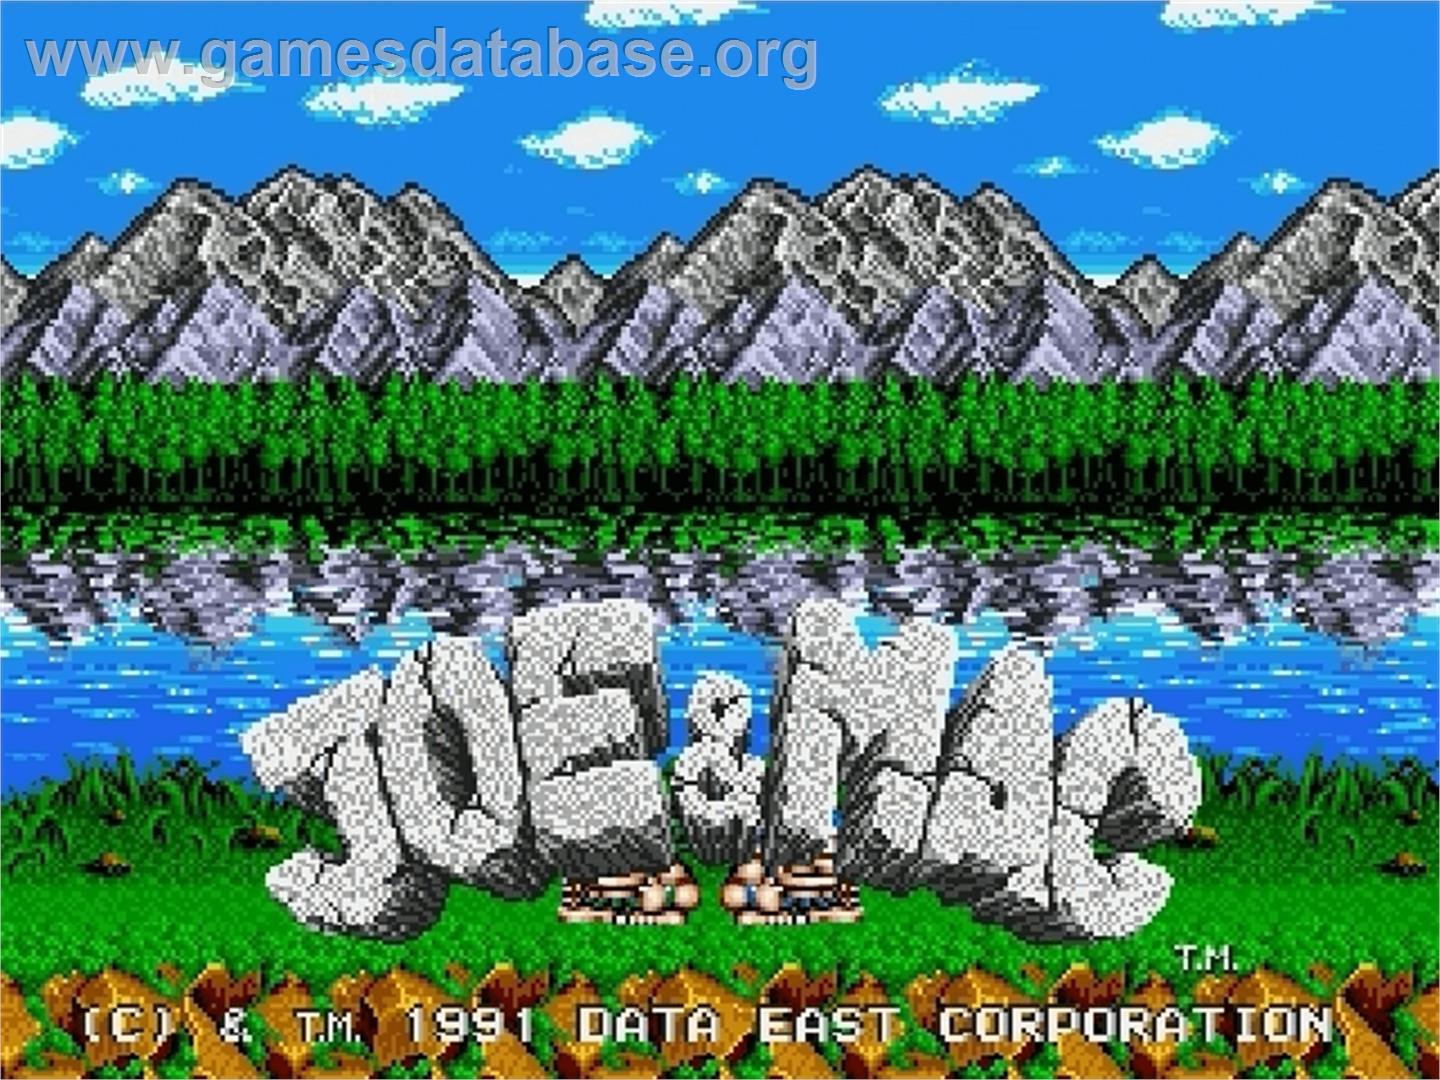 Joe & Mac: Caveman Ninja - Sega Genesis - Artwork - Title Screen